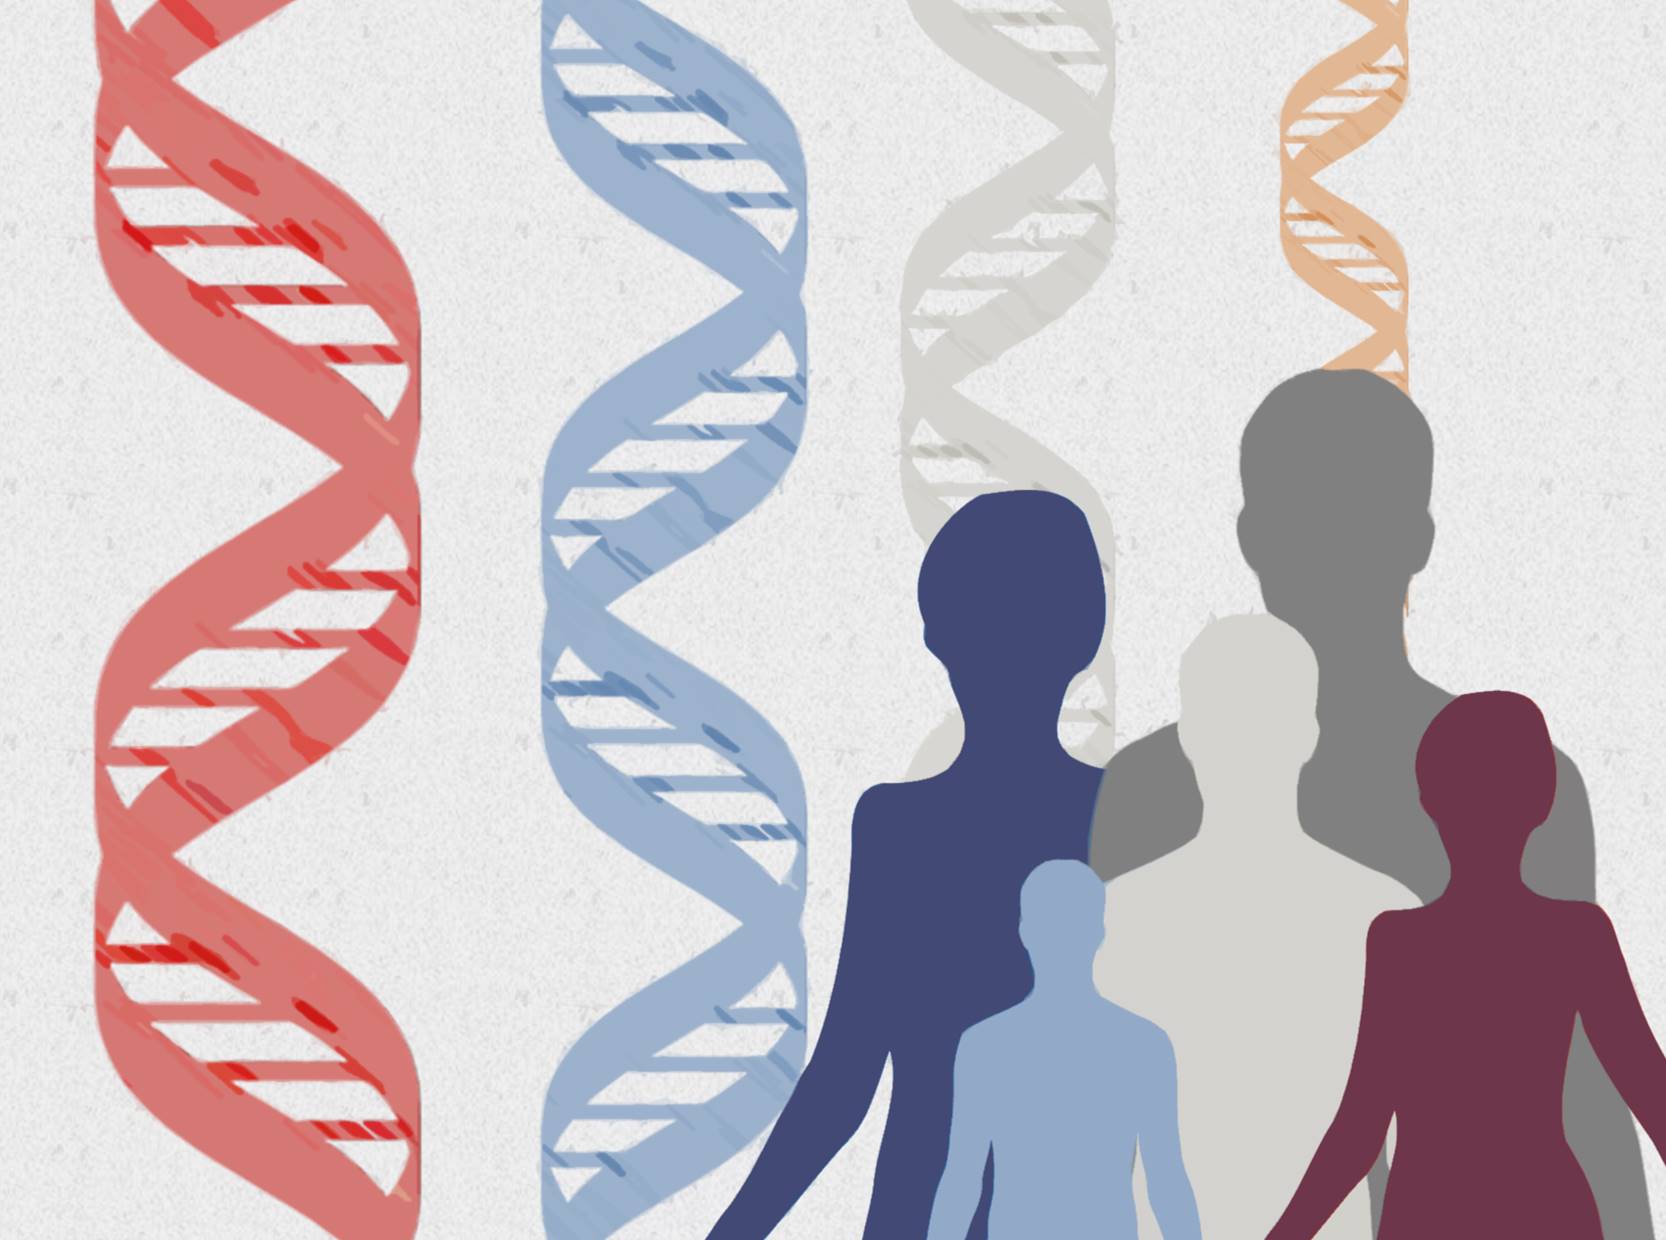 Resultados preliminares de dos ensayos clínicos aportan las primeras evidencias de edición del genoma humano in vivo